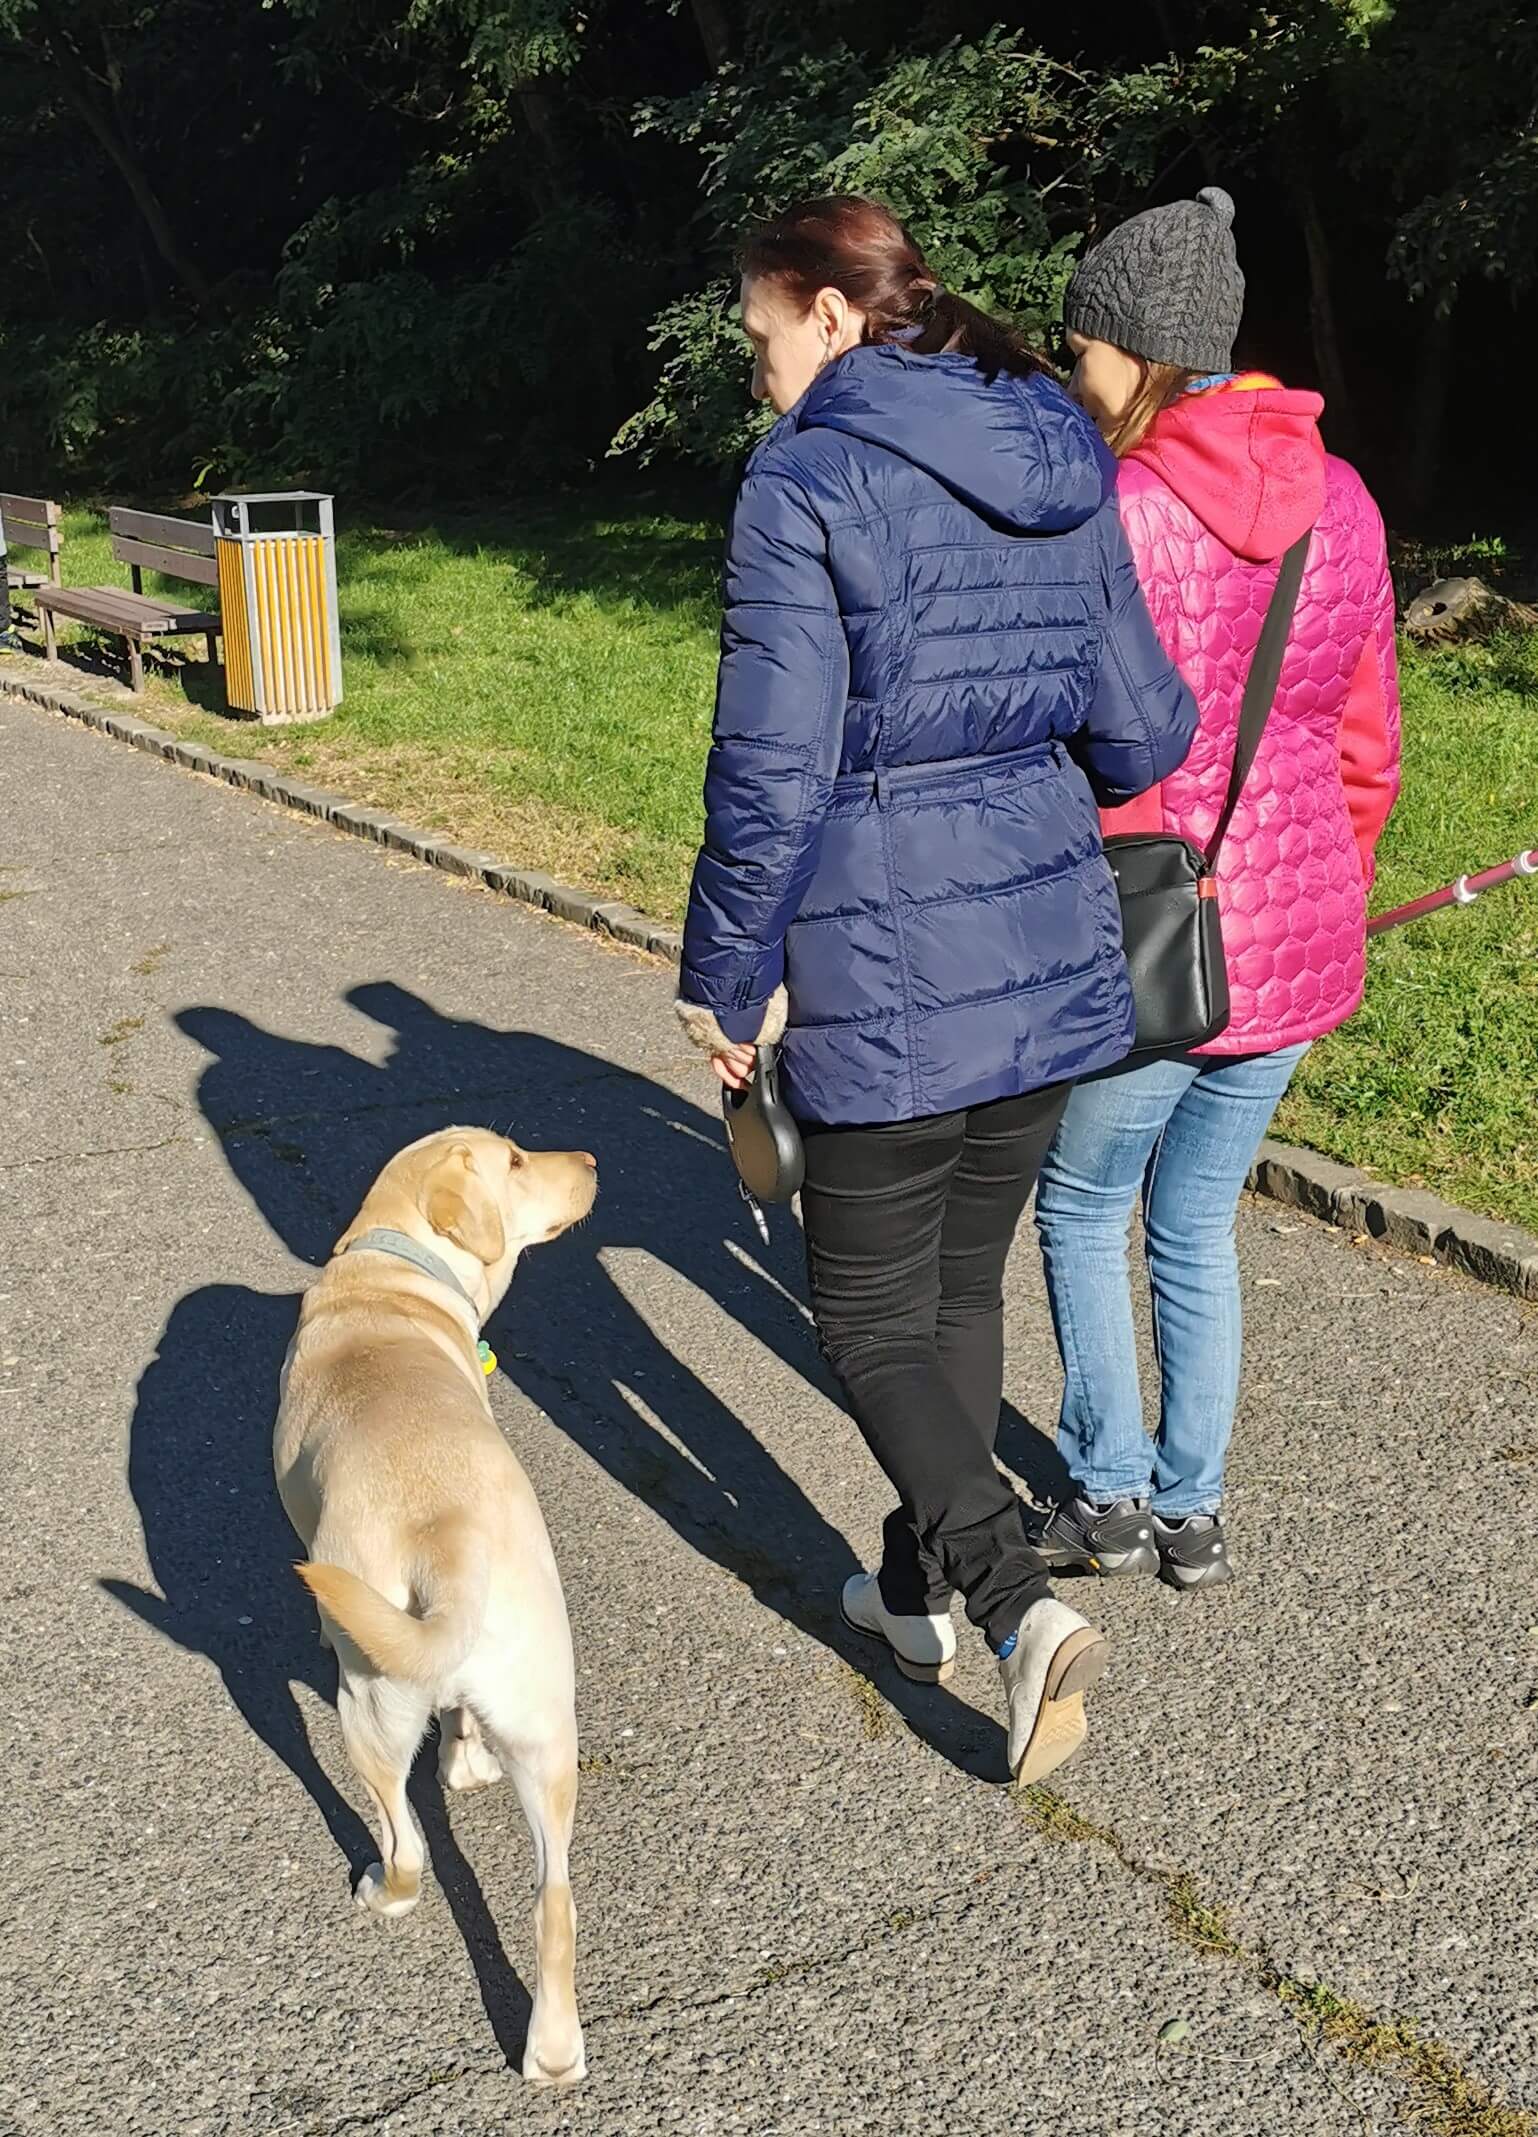 Po chodníku kráča cvičiteľka a vedie budúcu majiteľku vodiaceho psa. Vedľa nich kráča žltý labrador a pozerá na svoju budúcu paničku. 